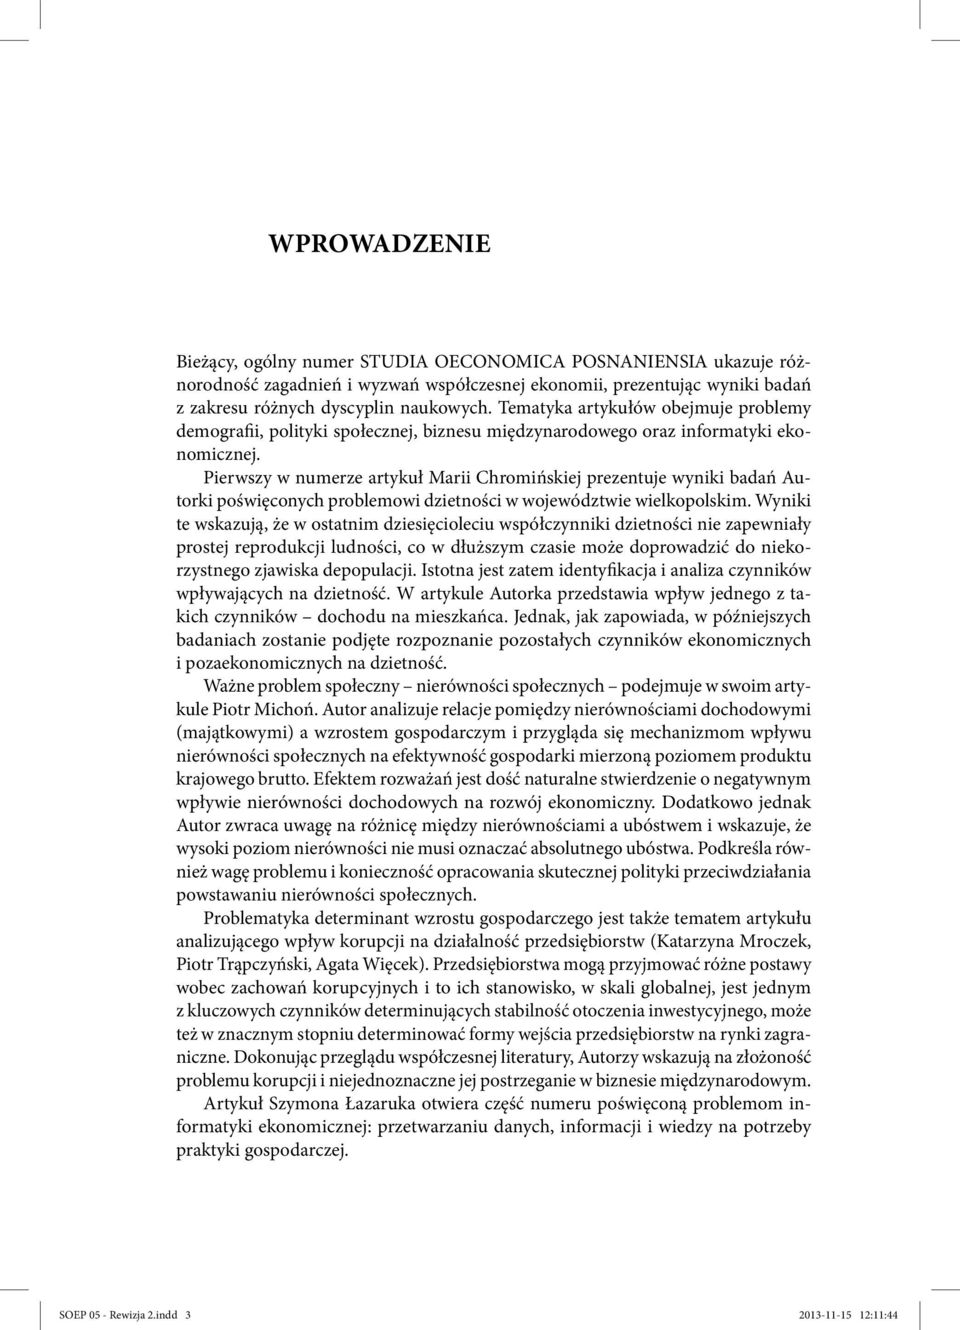 Pierwszy w numerze artykuł Marii Chromińskiej prezentuje wyniki badań Autorki poświęconych problemowi dzietności w województwie wielkopolskim.